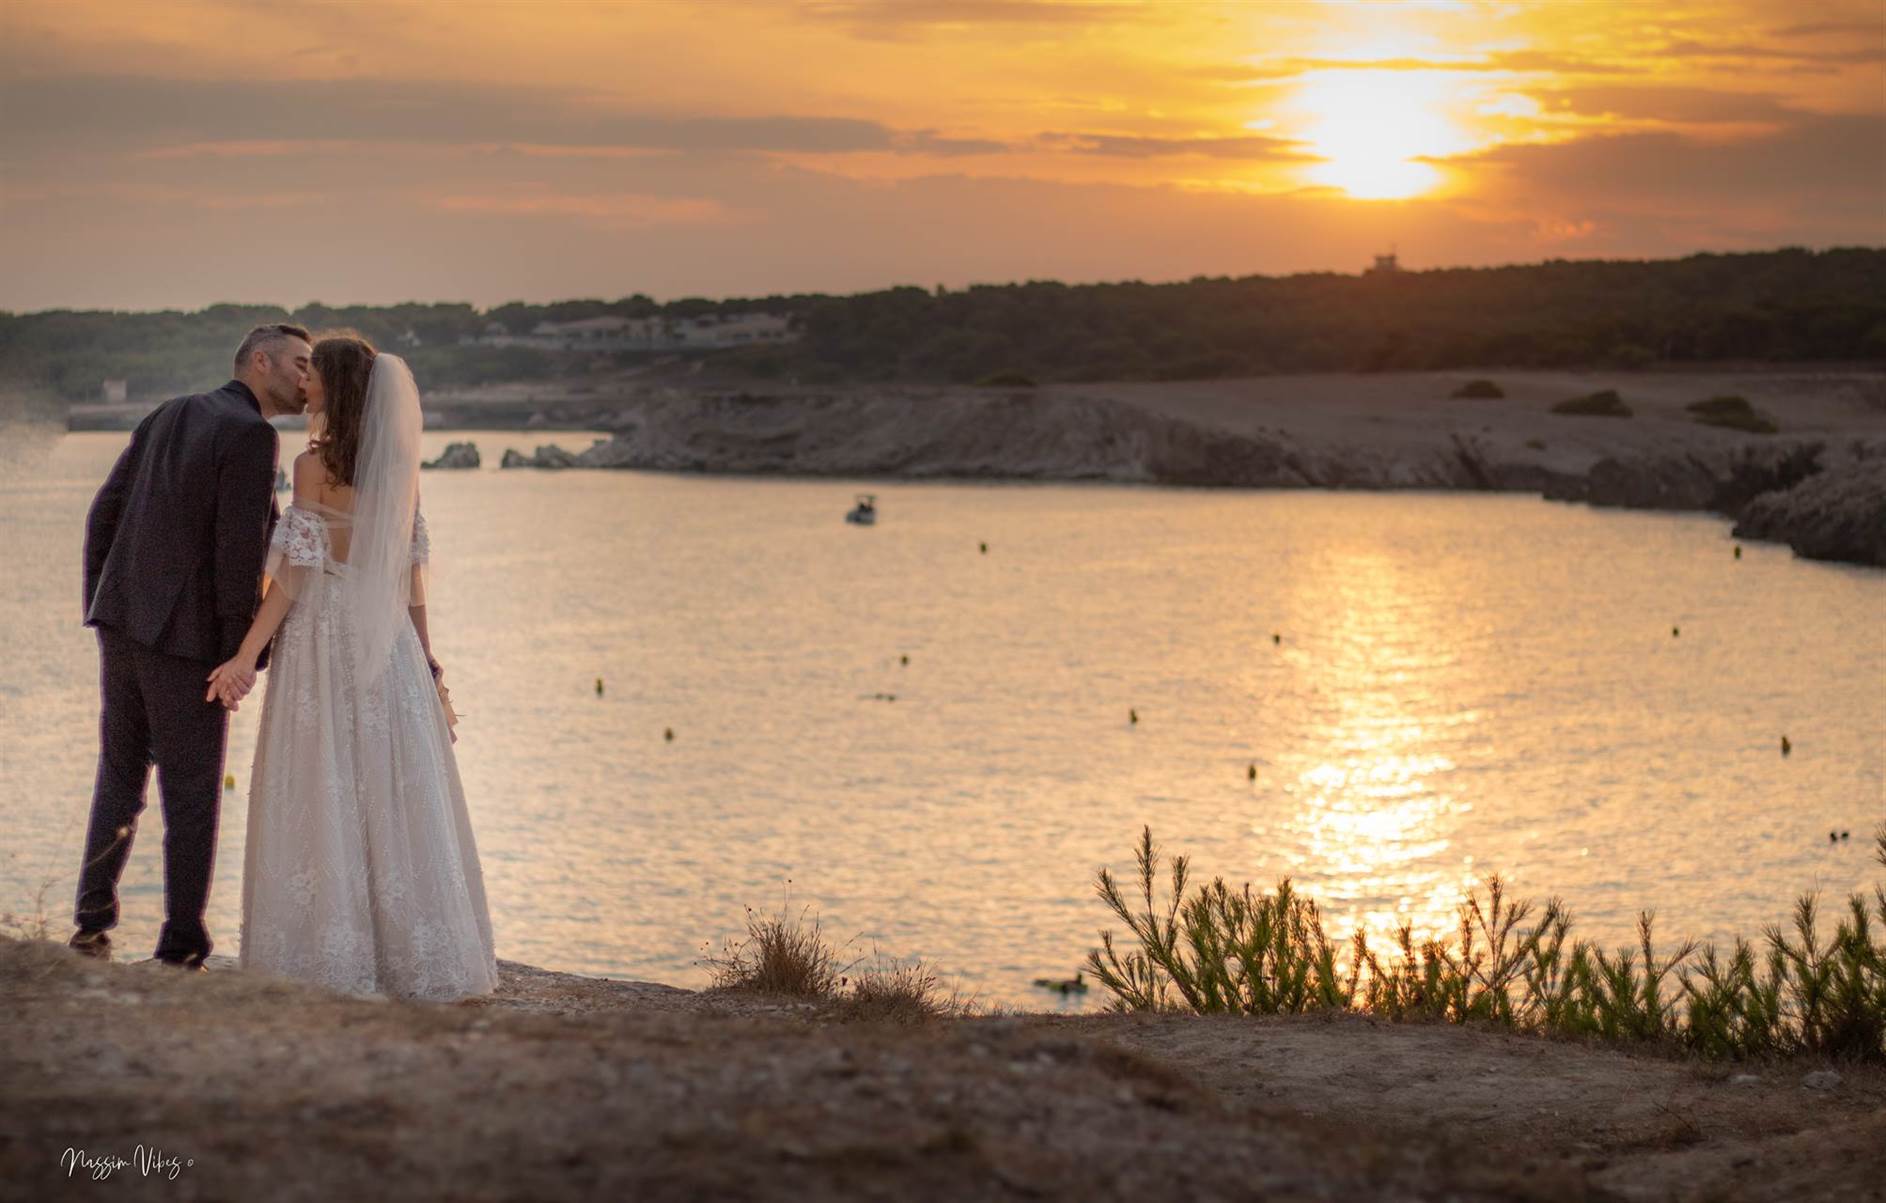 Immortalisez votre amour à Aix-en-Provence avec Nassim, le photographe de mariage passionné 120